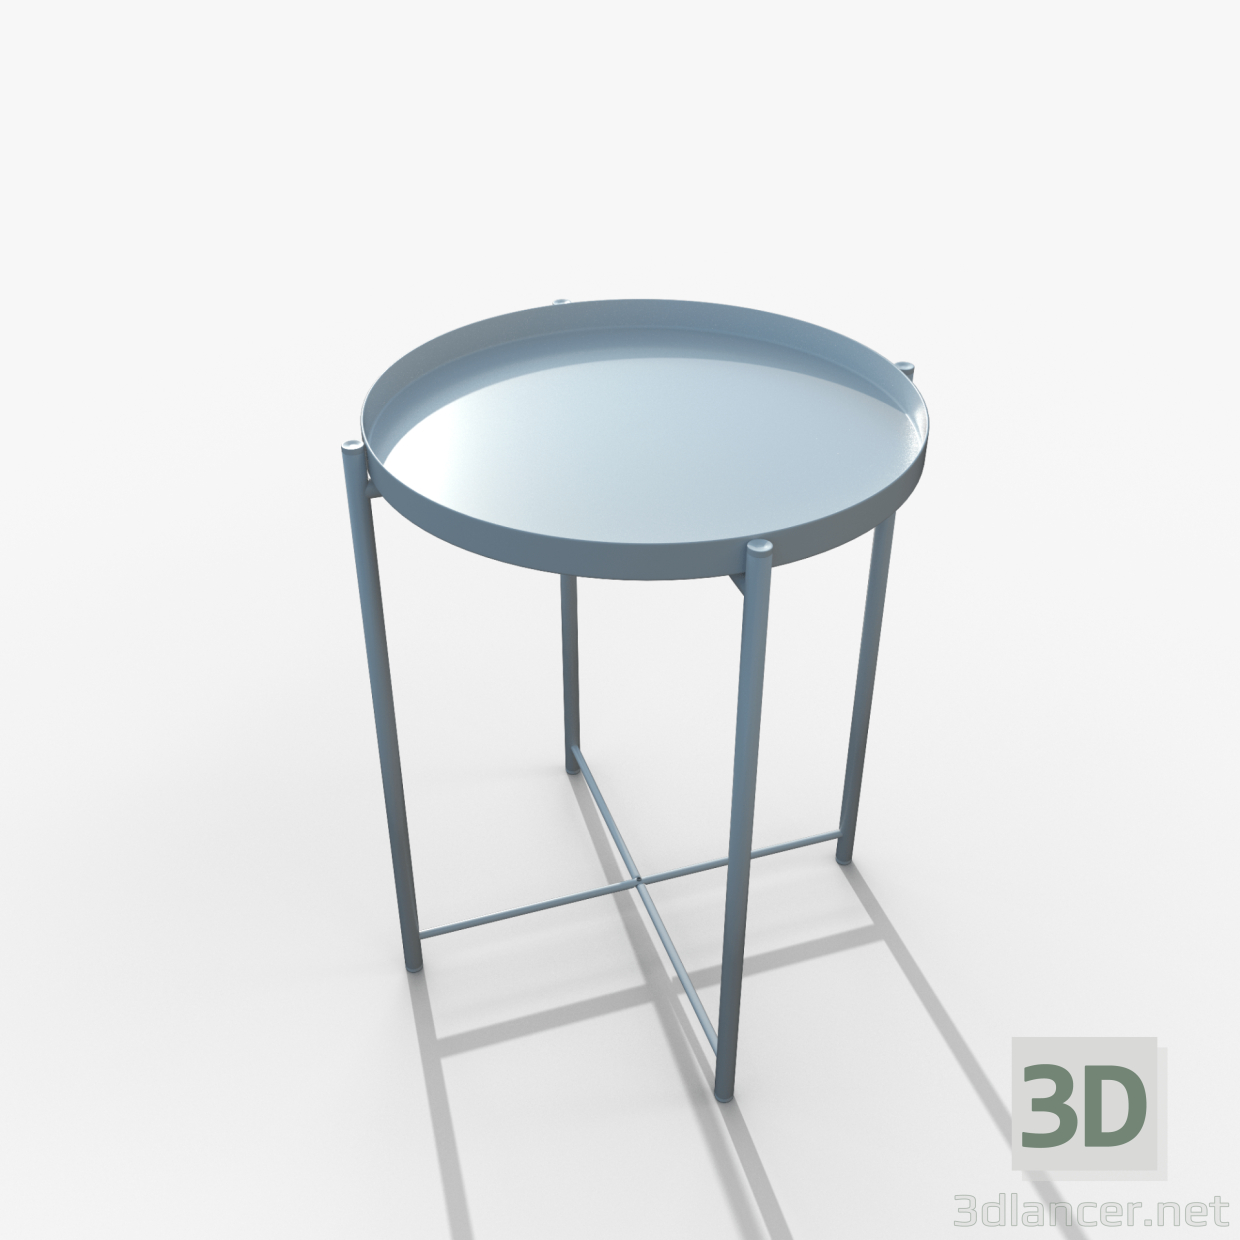 Gladom Tisch weiß IKEA 3D-Modell kaufen - Rendern